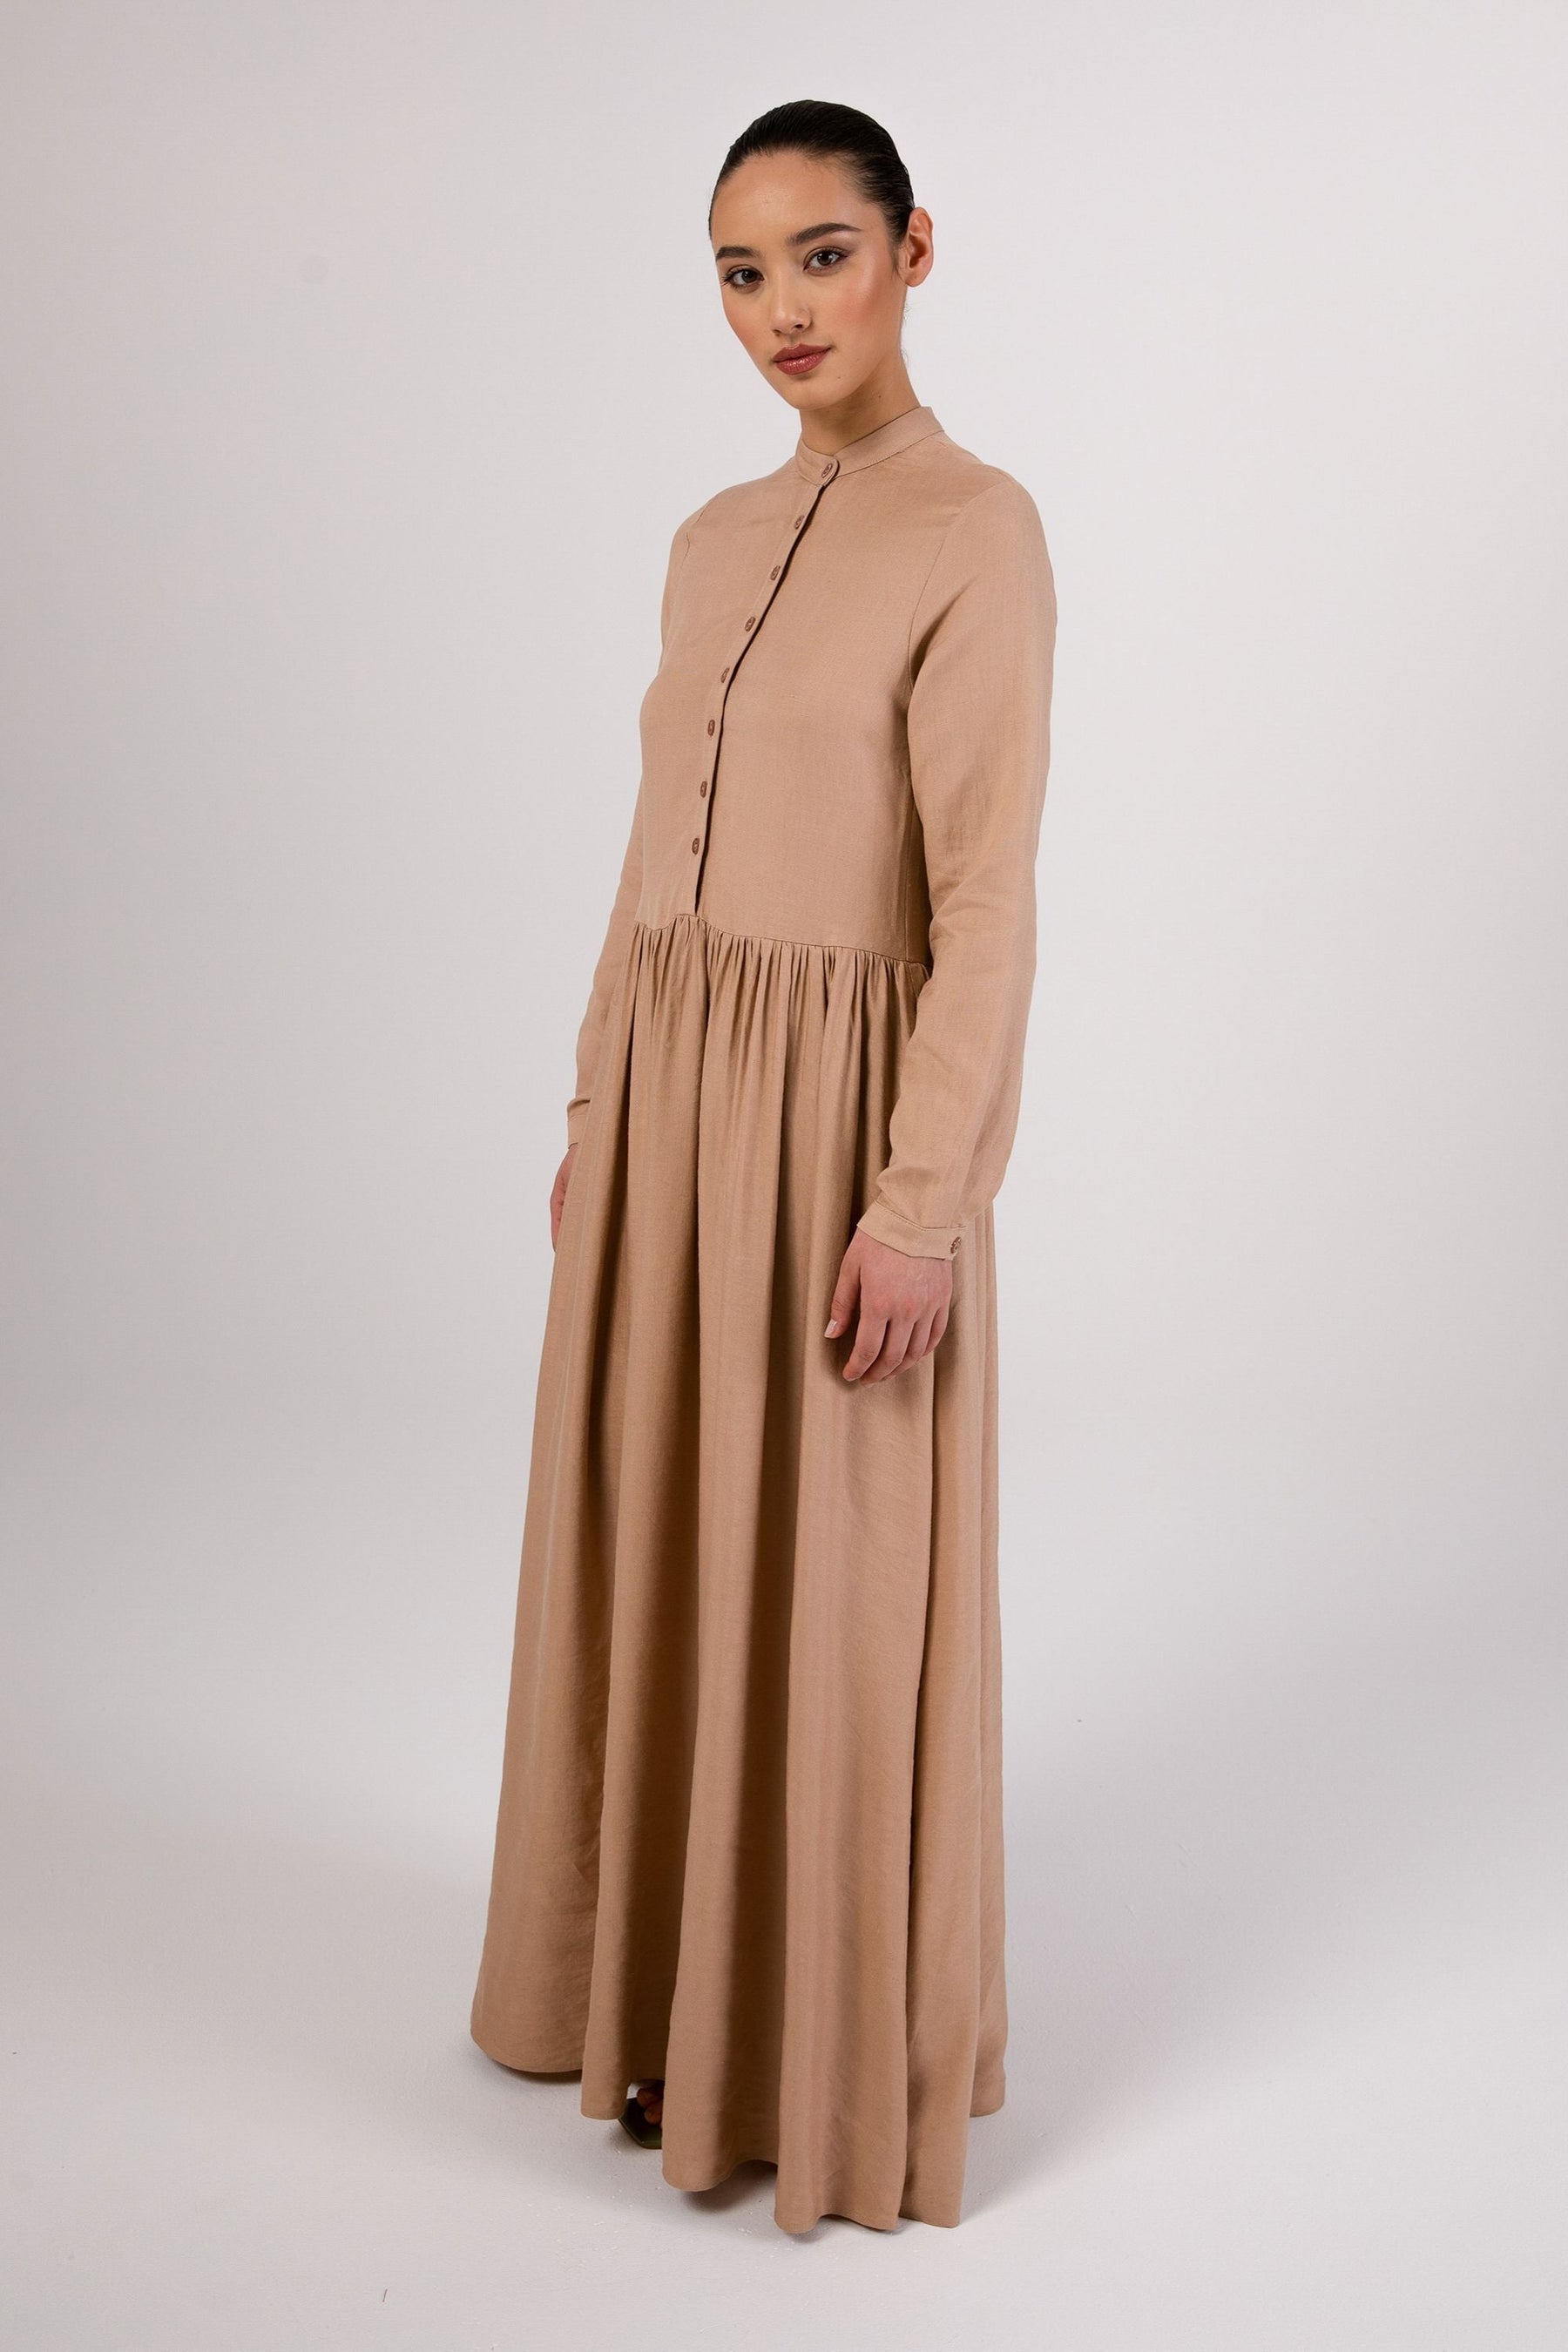 Karima Flowy Linen Maxi Shirt Dress - Taupe epschoolboard 